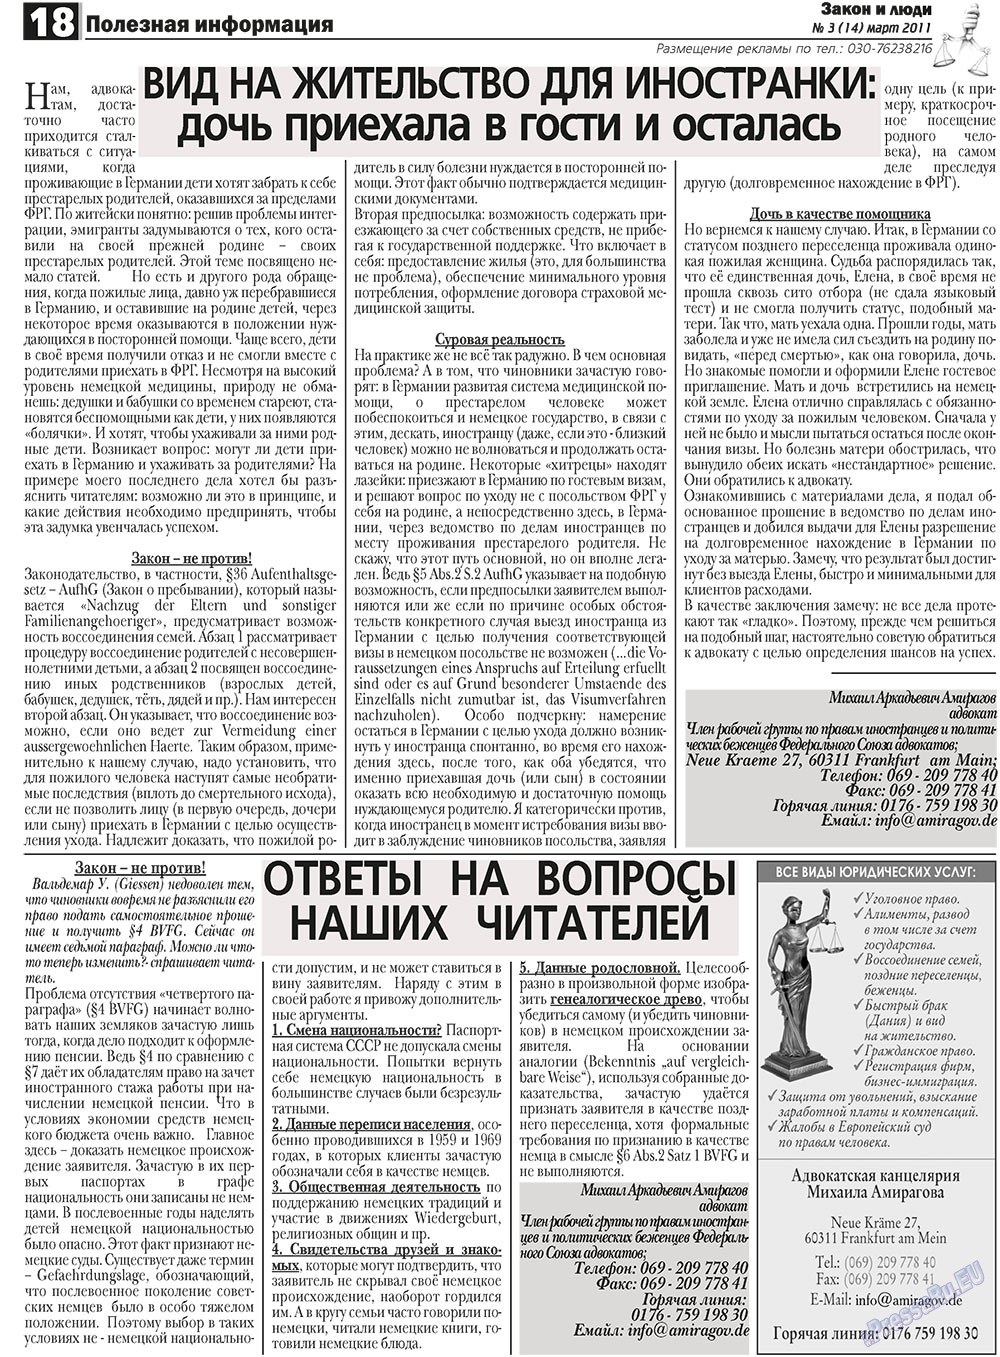 Закон и люди (газета). 2011 год, номер 3, стр. 18